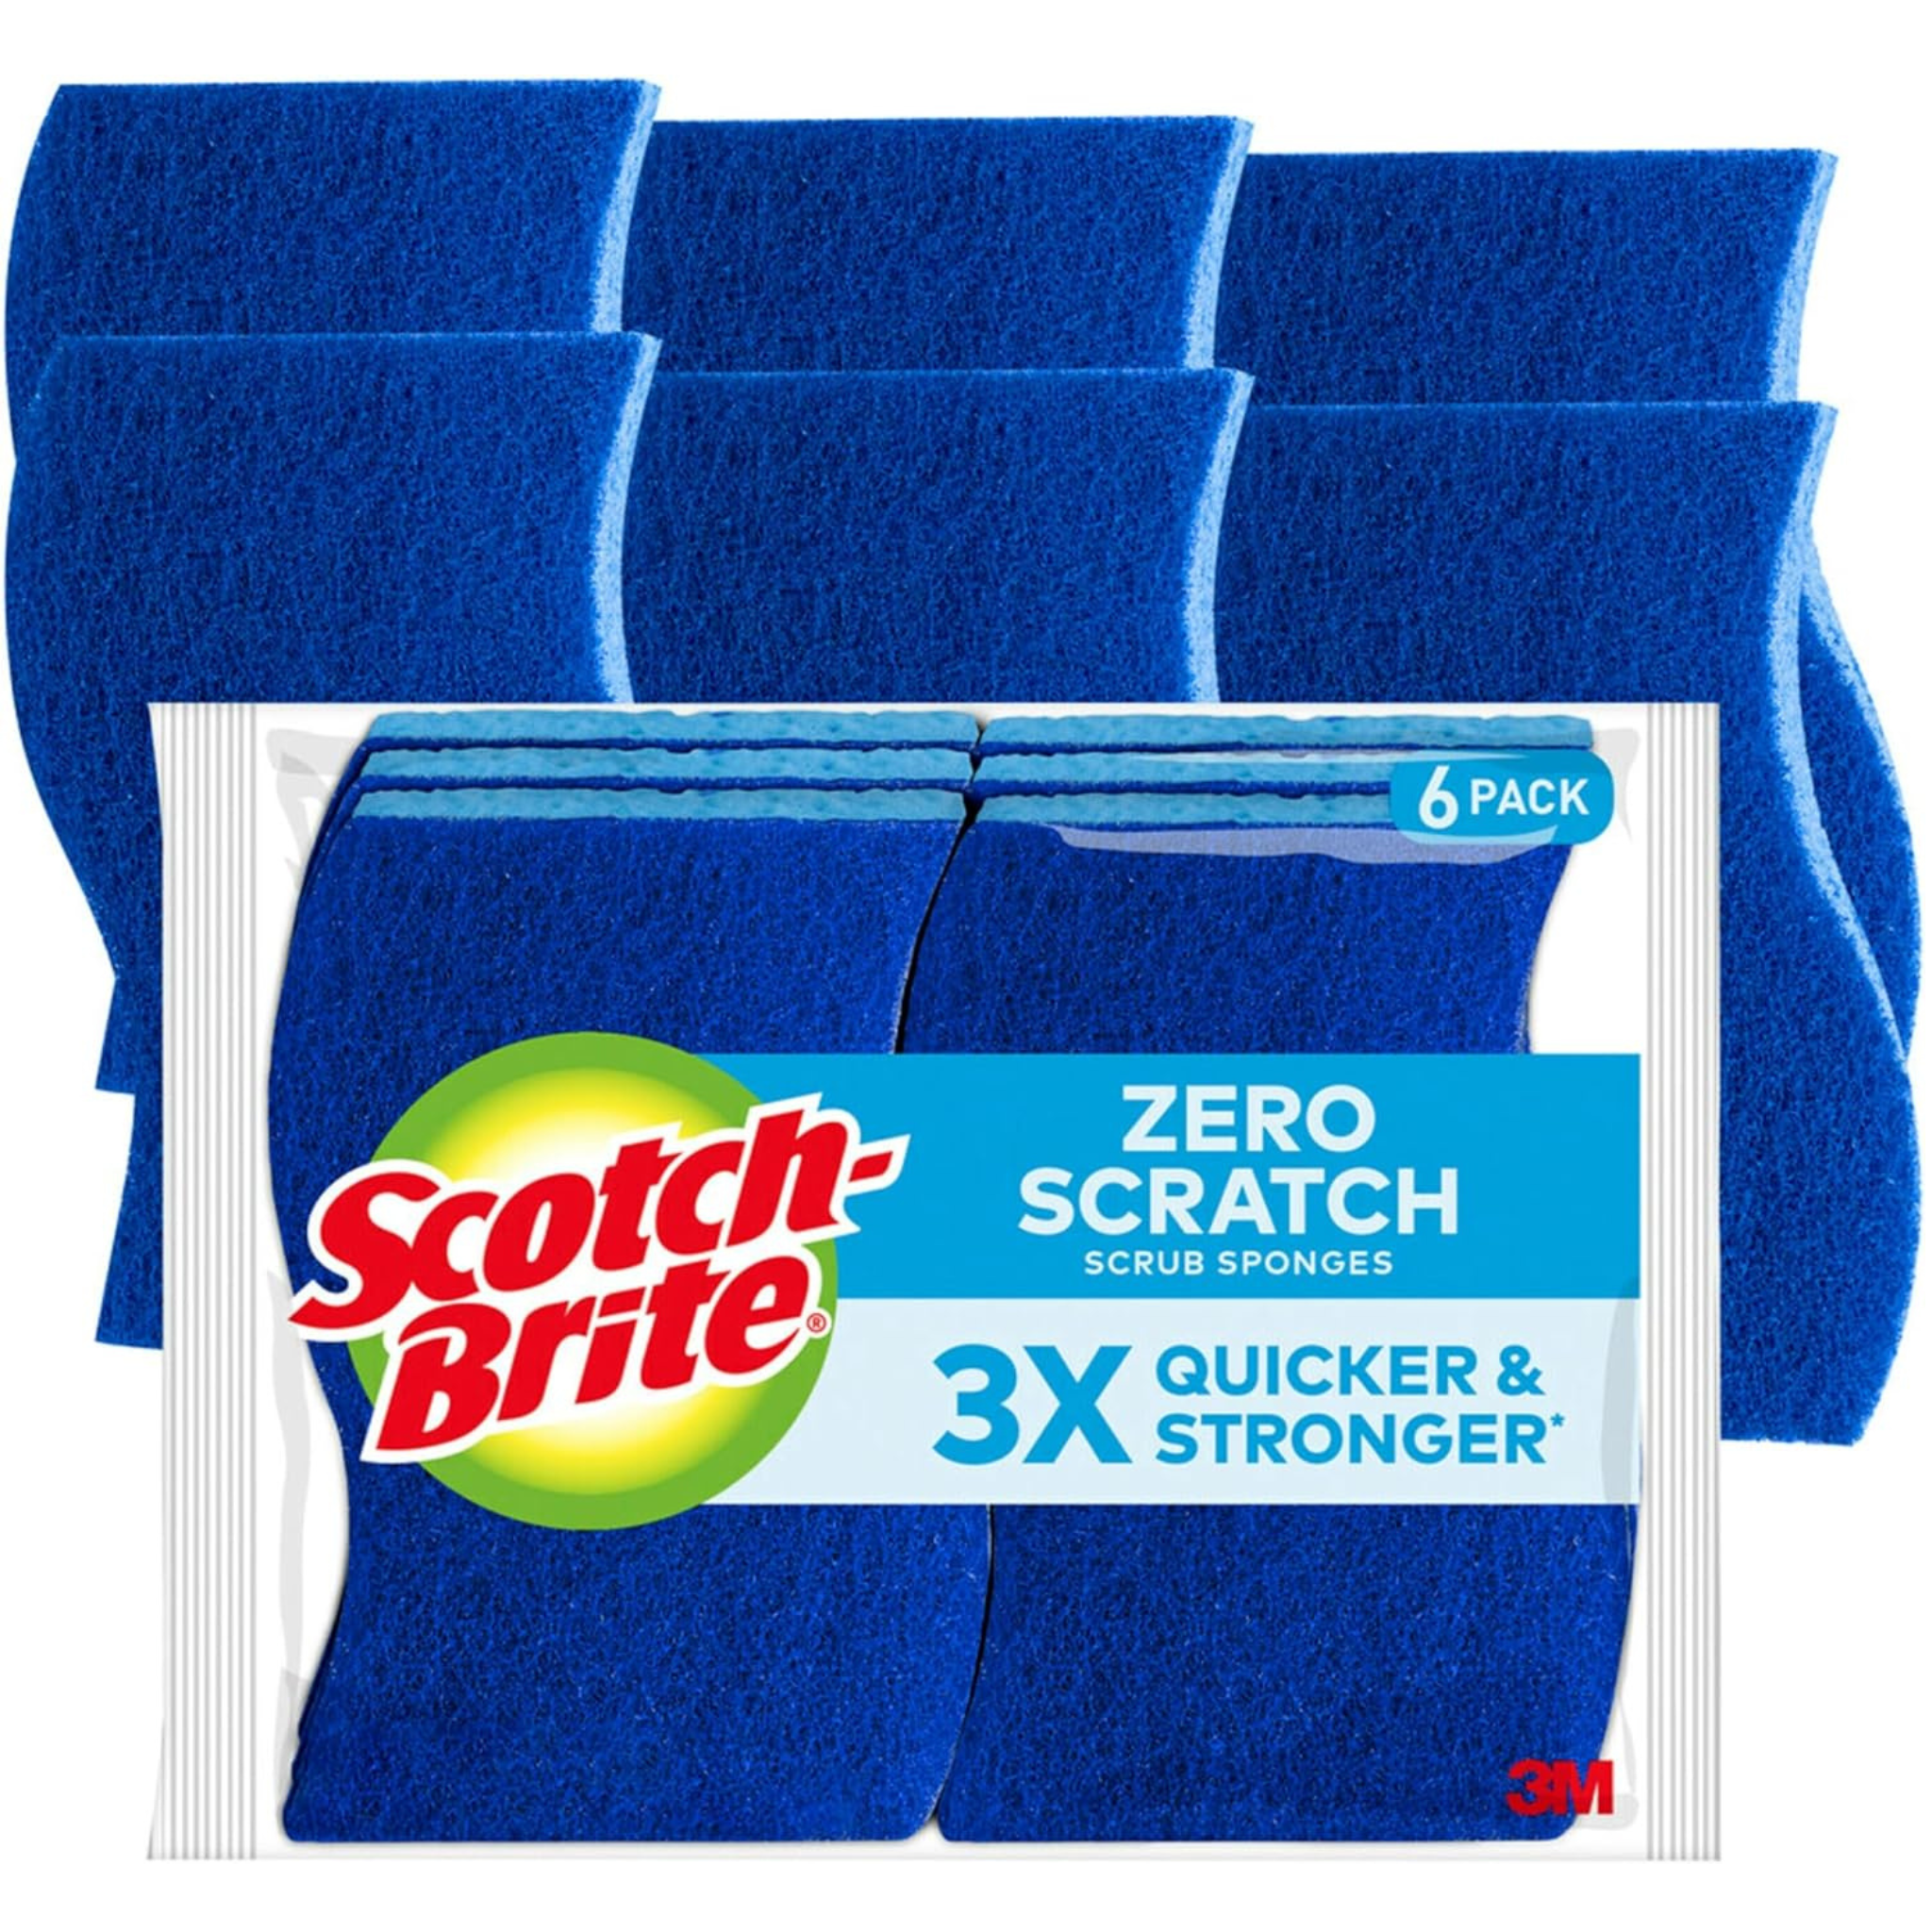 6-Pack Scotch-Brite Zero Scratch Scrub Sponges (Blue)